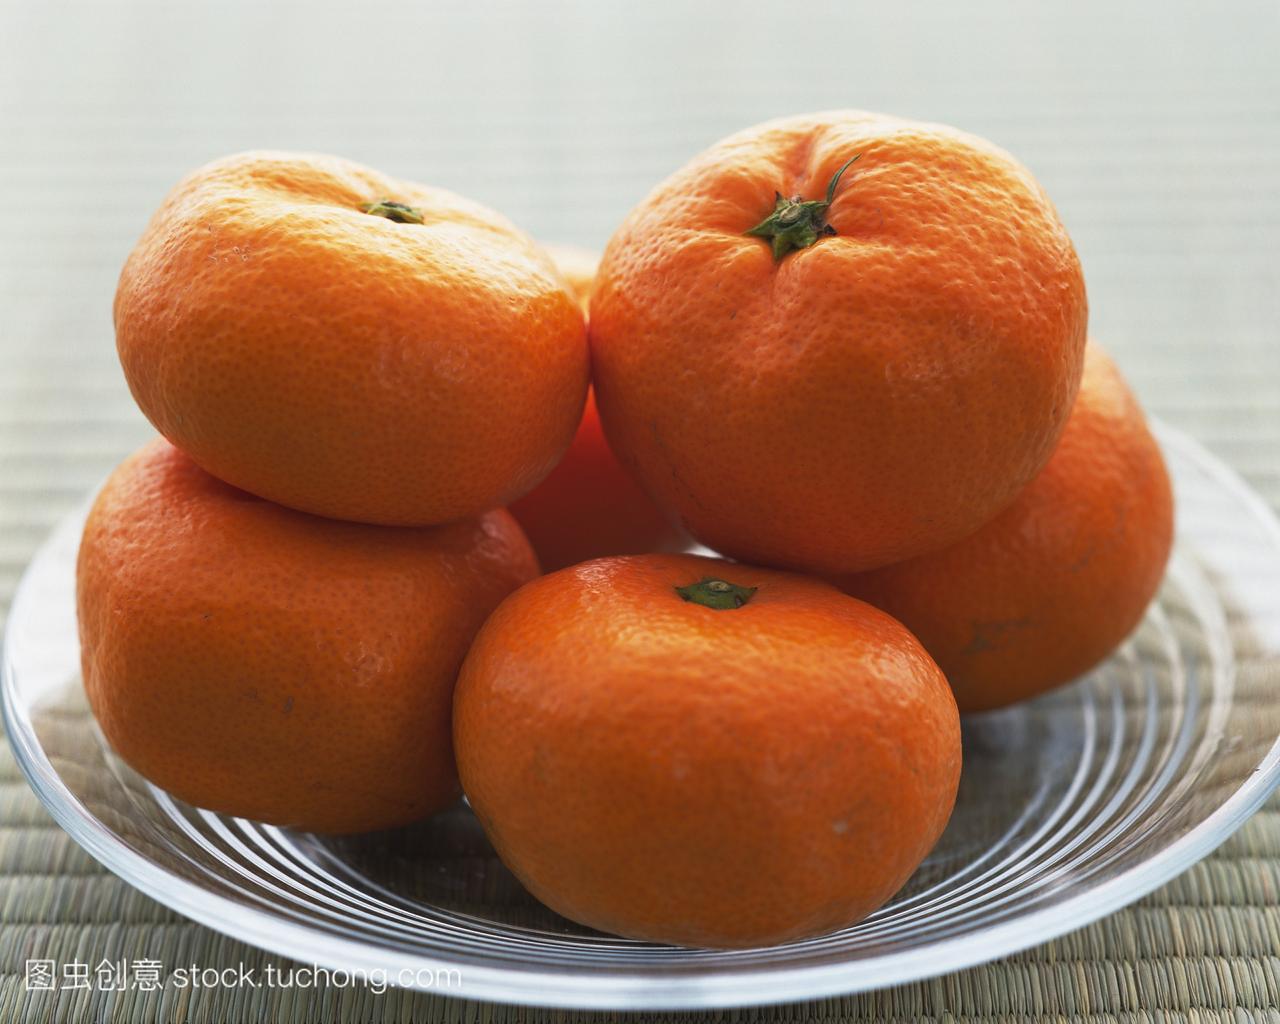 橙子,橙色,view from above,horizontal image,No